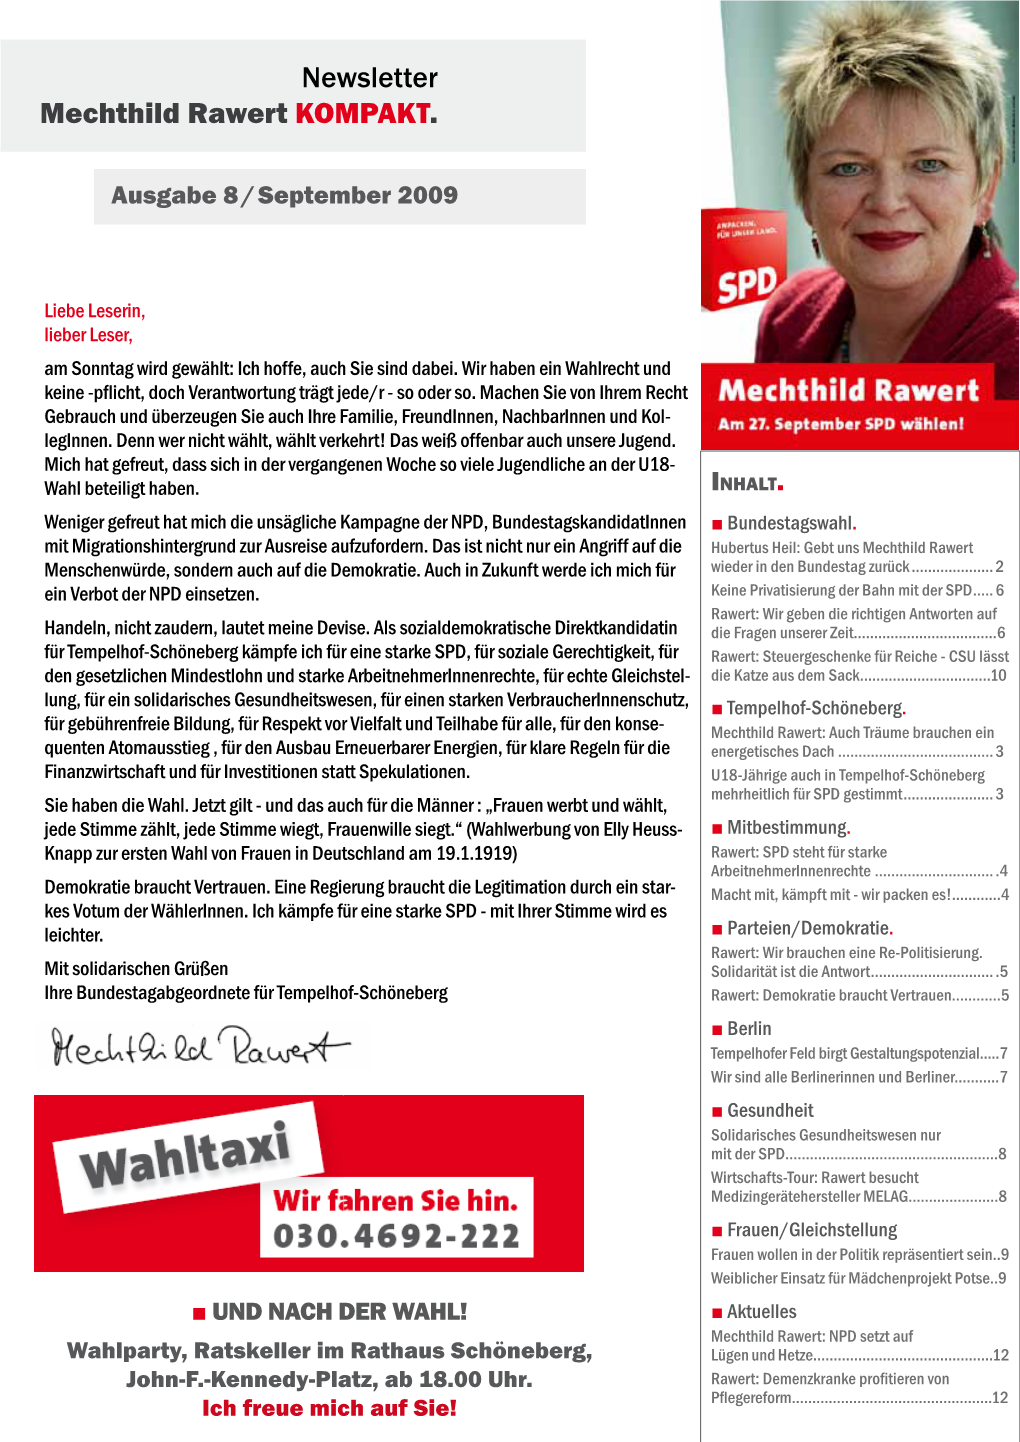 Newsletter Mechthild Rawert KOMPAKT